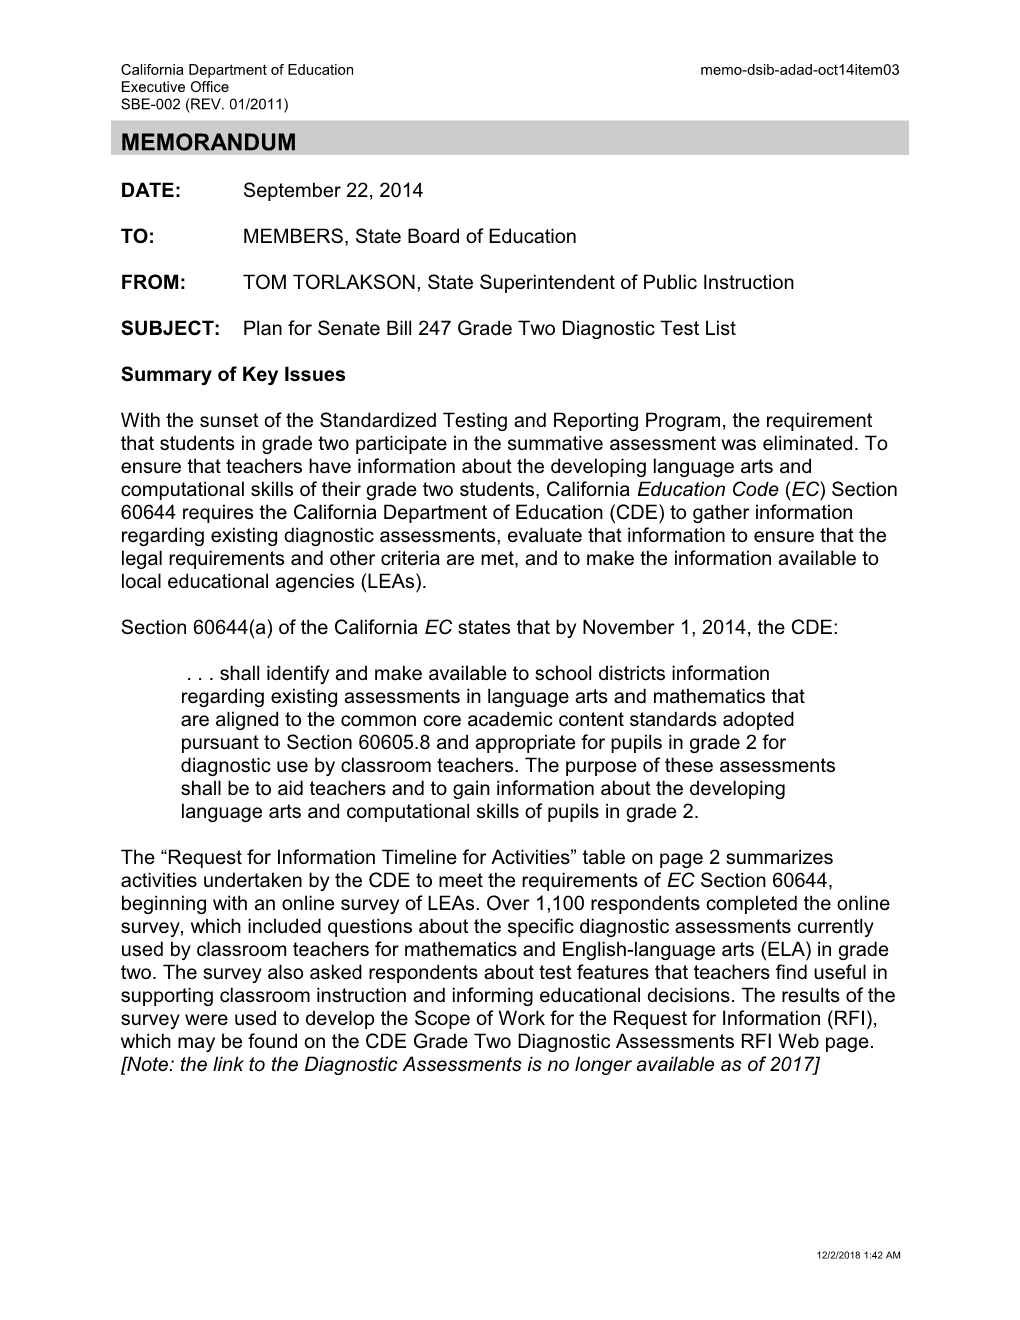 October 2014 DSIB ADAD Item 03 - Information Memorandum (CA State Board of Education)